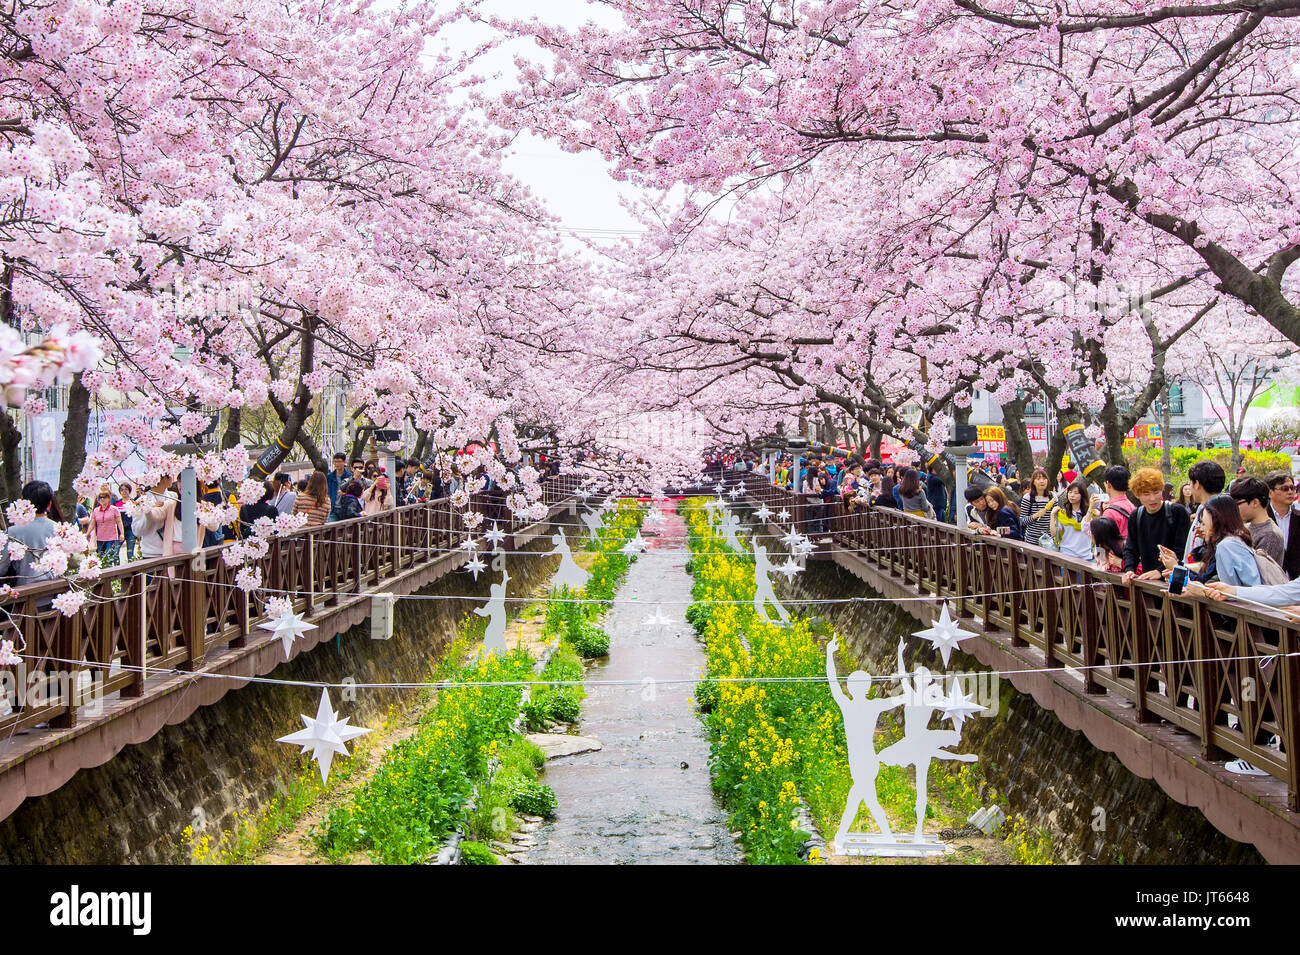 JINHAE,COREA - Aprile 2 : Jinhae Gunhangje Festival è il più grande Cherry Blossom Festival in Corea.i turisti per scattare delle foto del bellissimo scenario aro Foto Stock